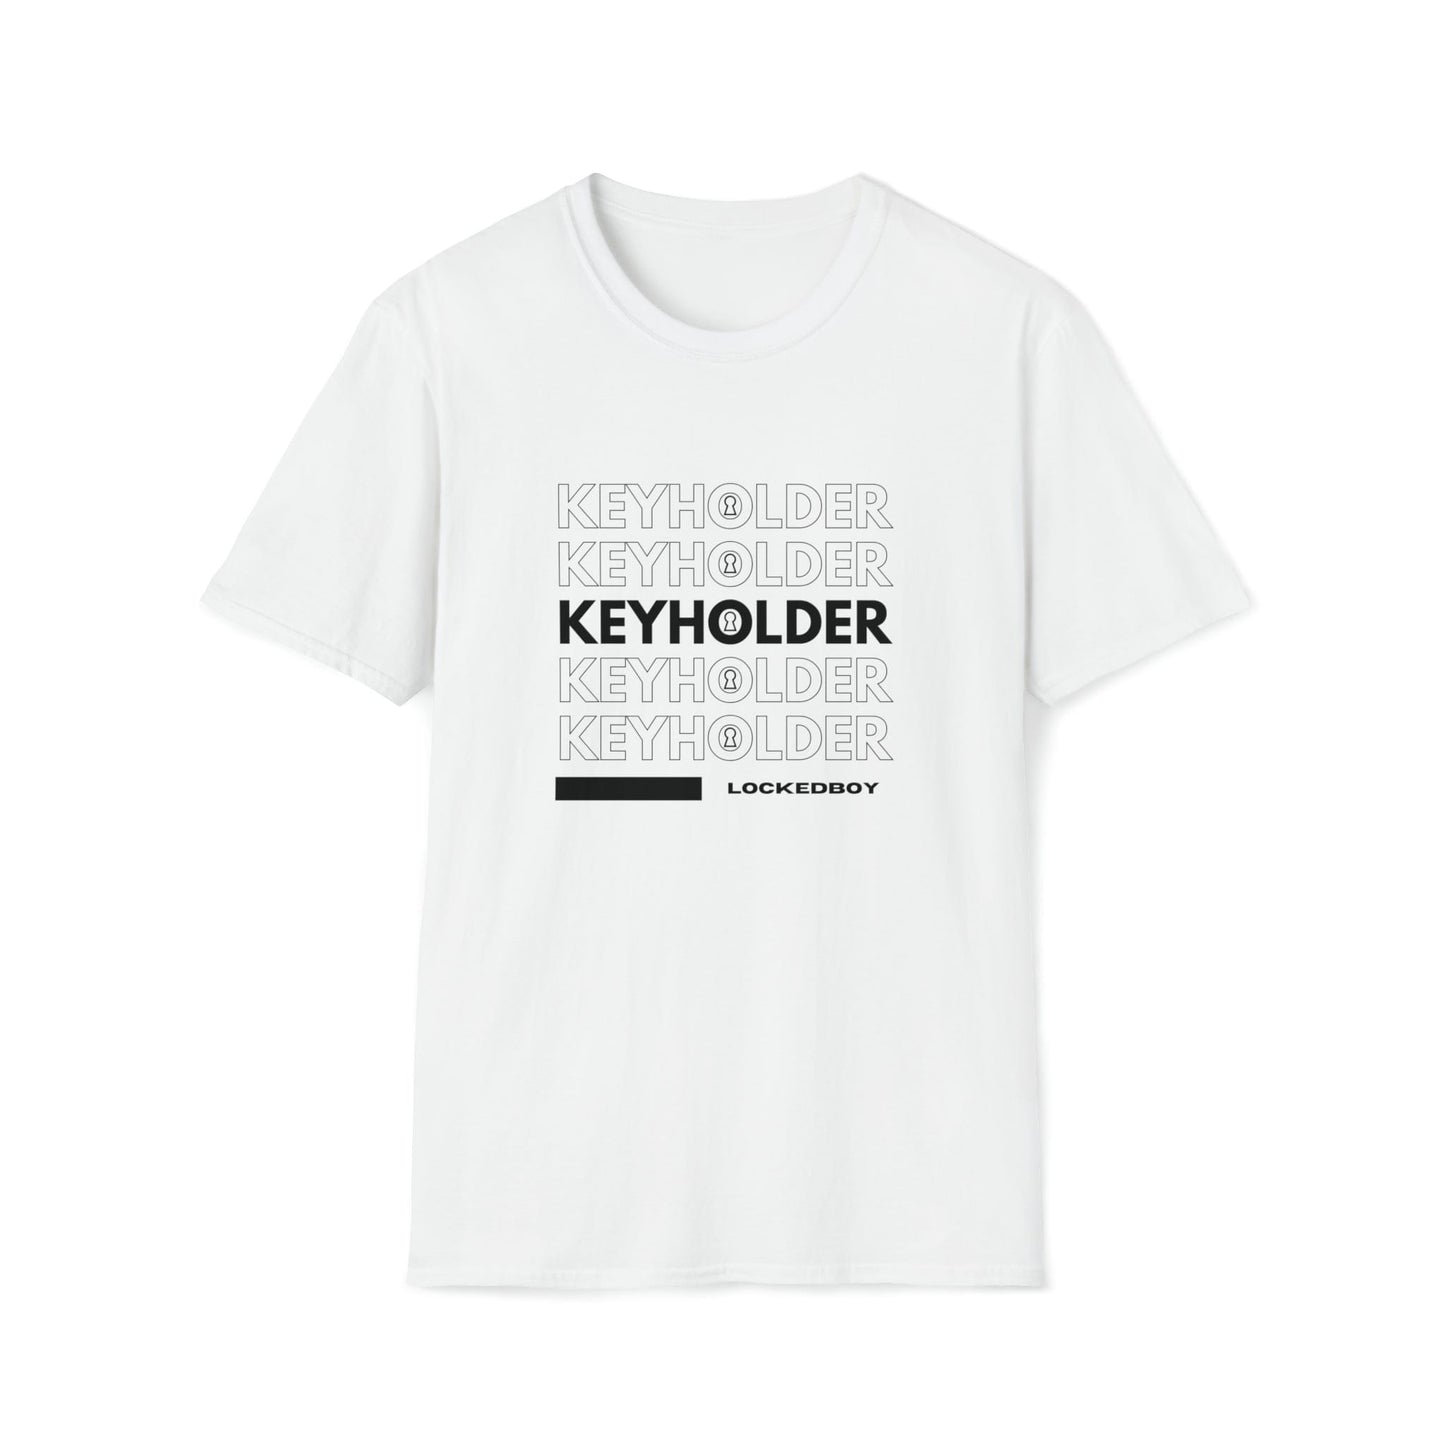 T-Shirt White / S KEYHOLDER bag Inspo - Chastity Shirts by LockedBoy Athletics LEATHERDADDY BATOR